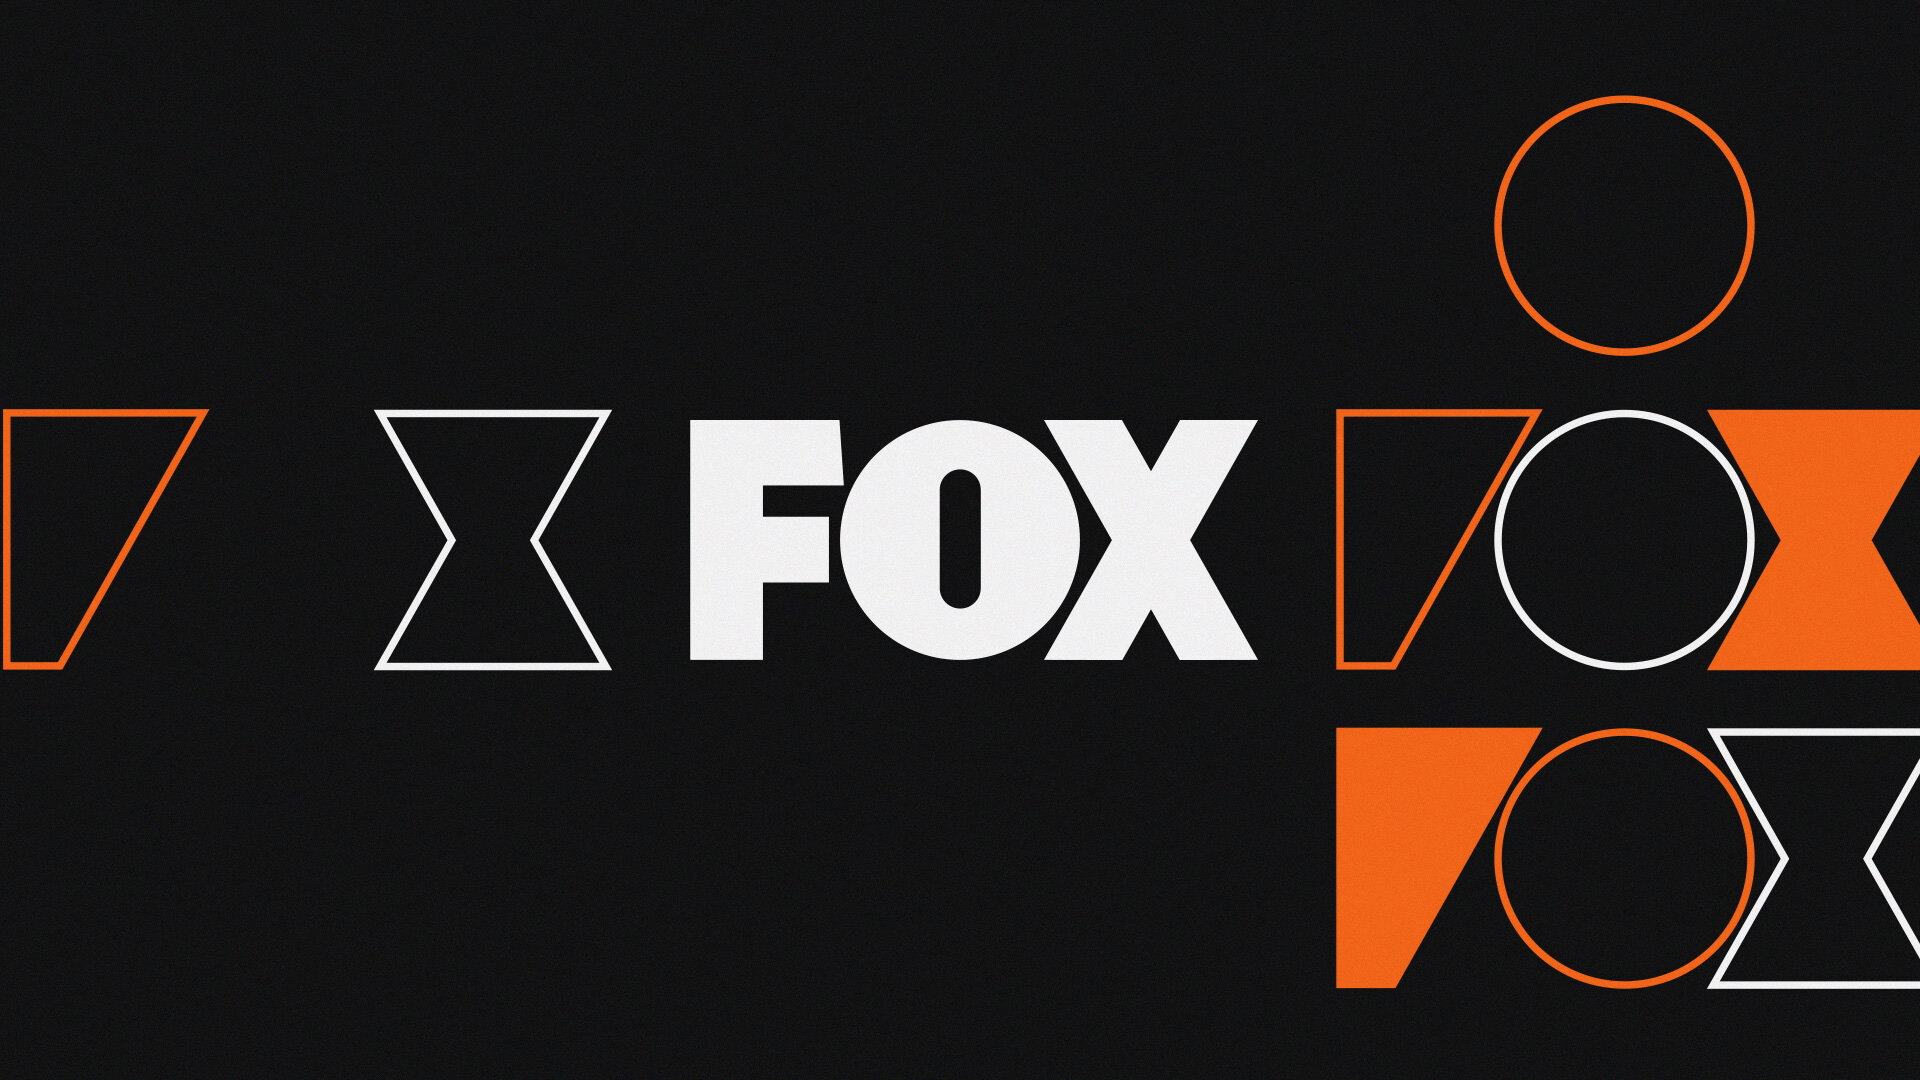 FOX_On-Air_Design_04_Adam-Wentworth_Graphic-Design.jpg